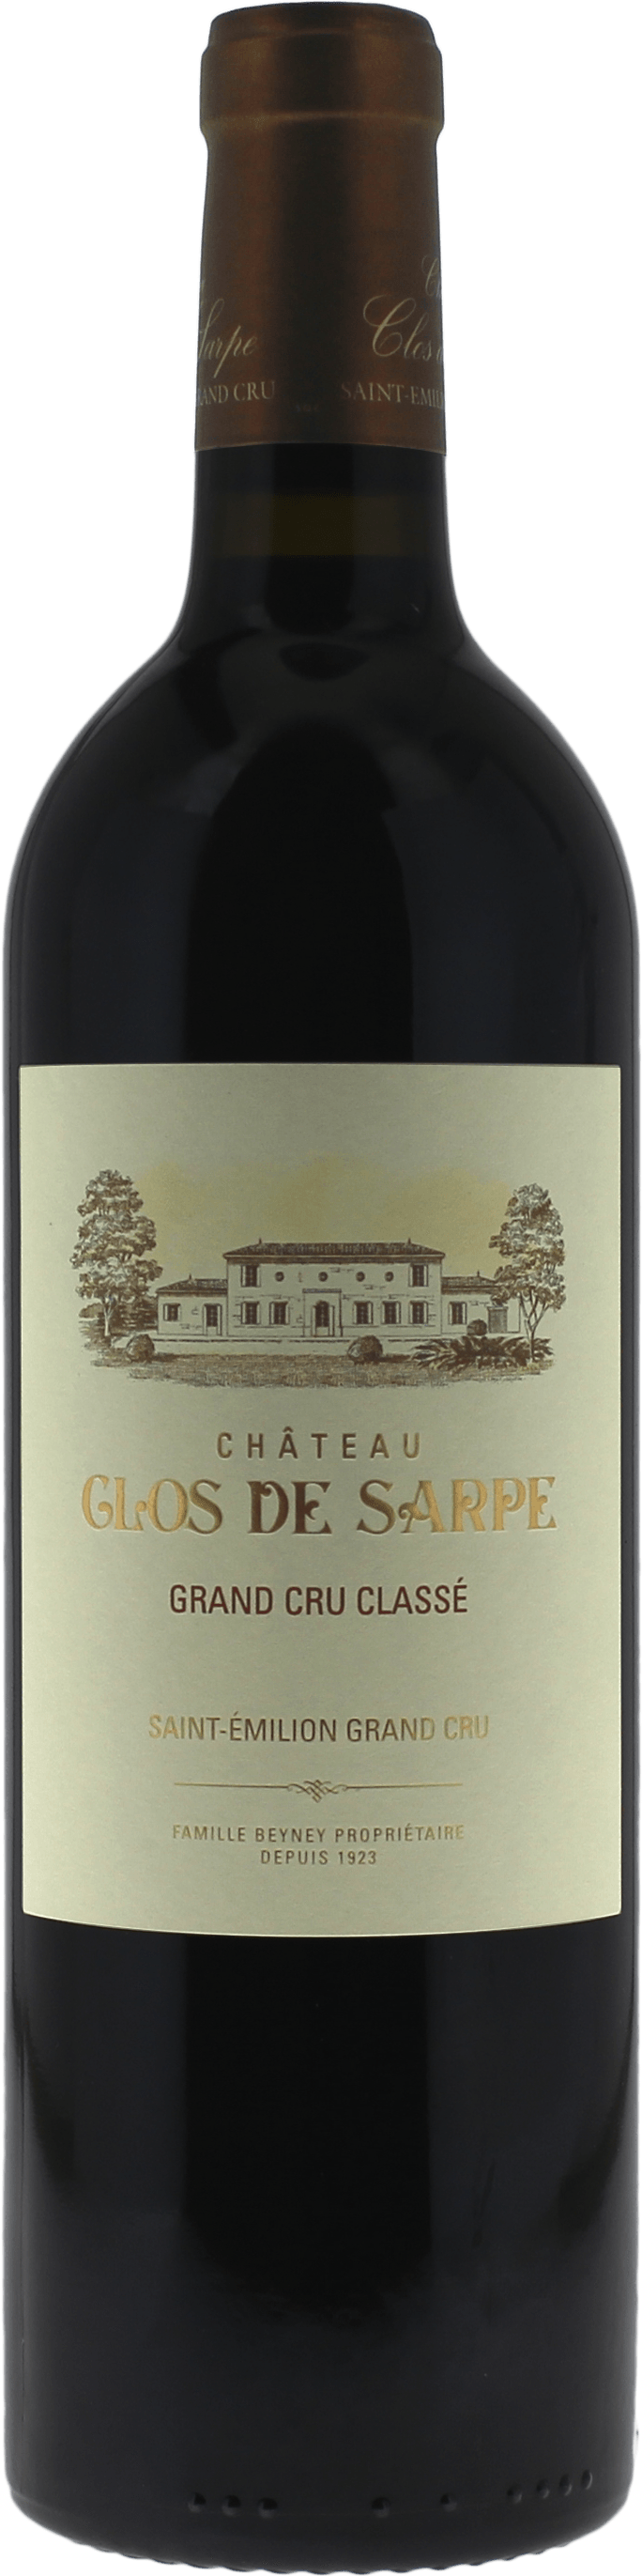 Clos de sarpe 2016 Grand Cru Class Saint-Emilion, Bordeaux rouge